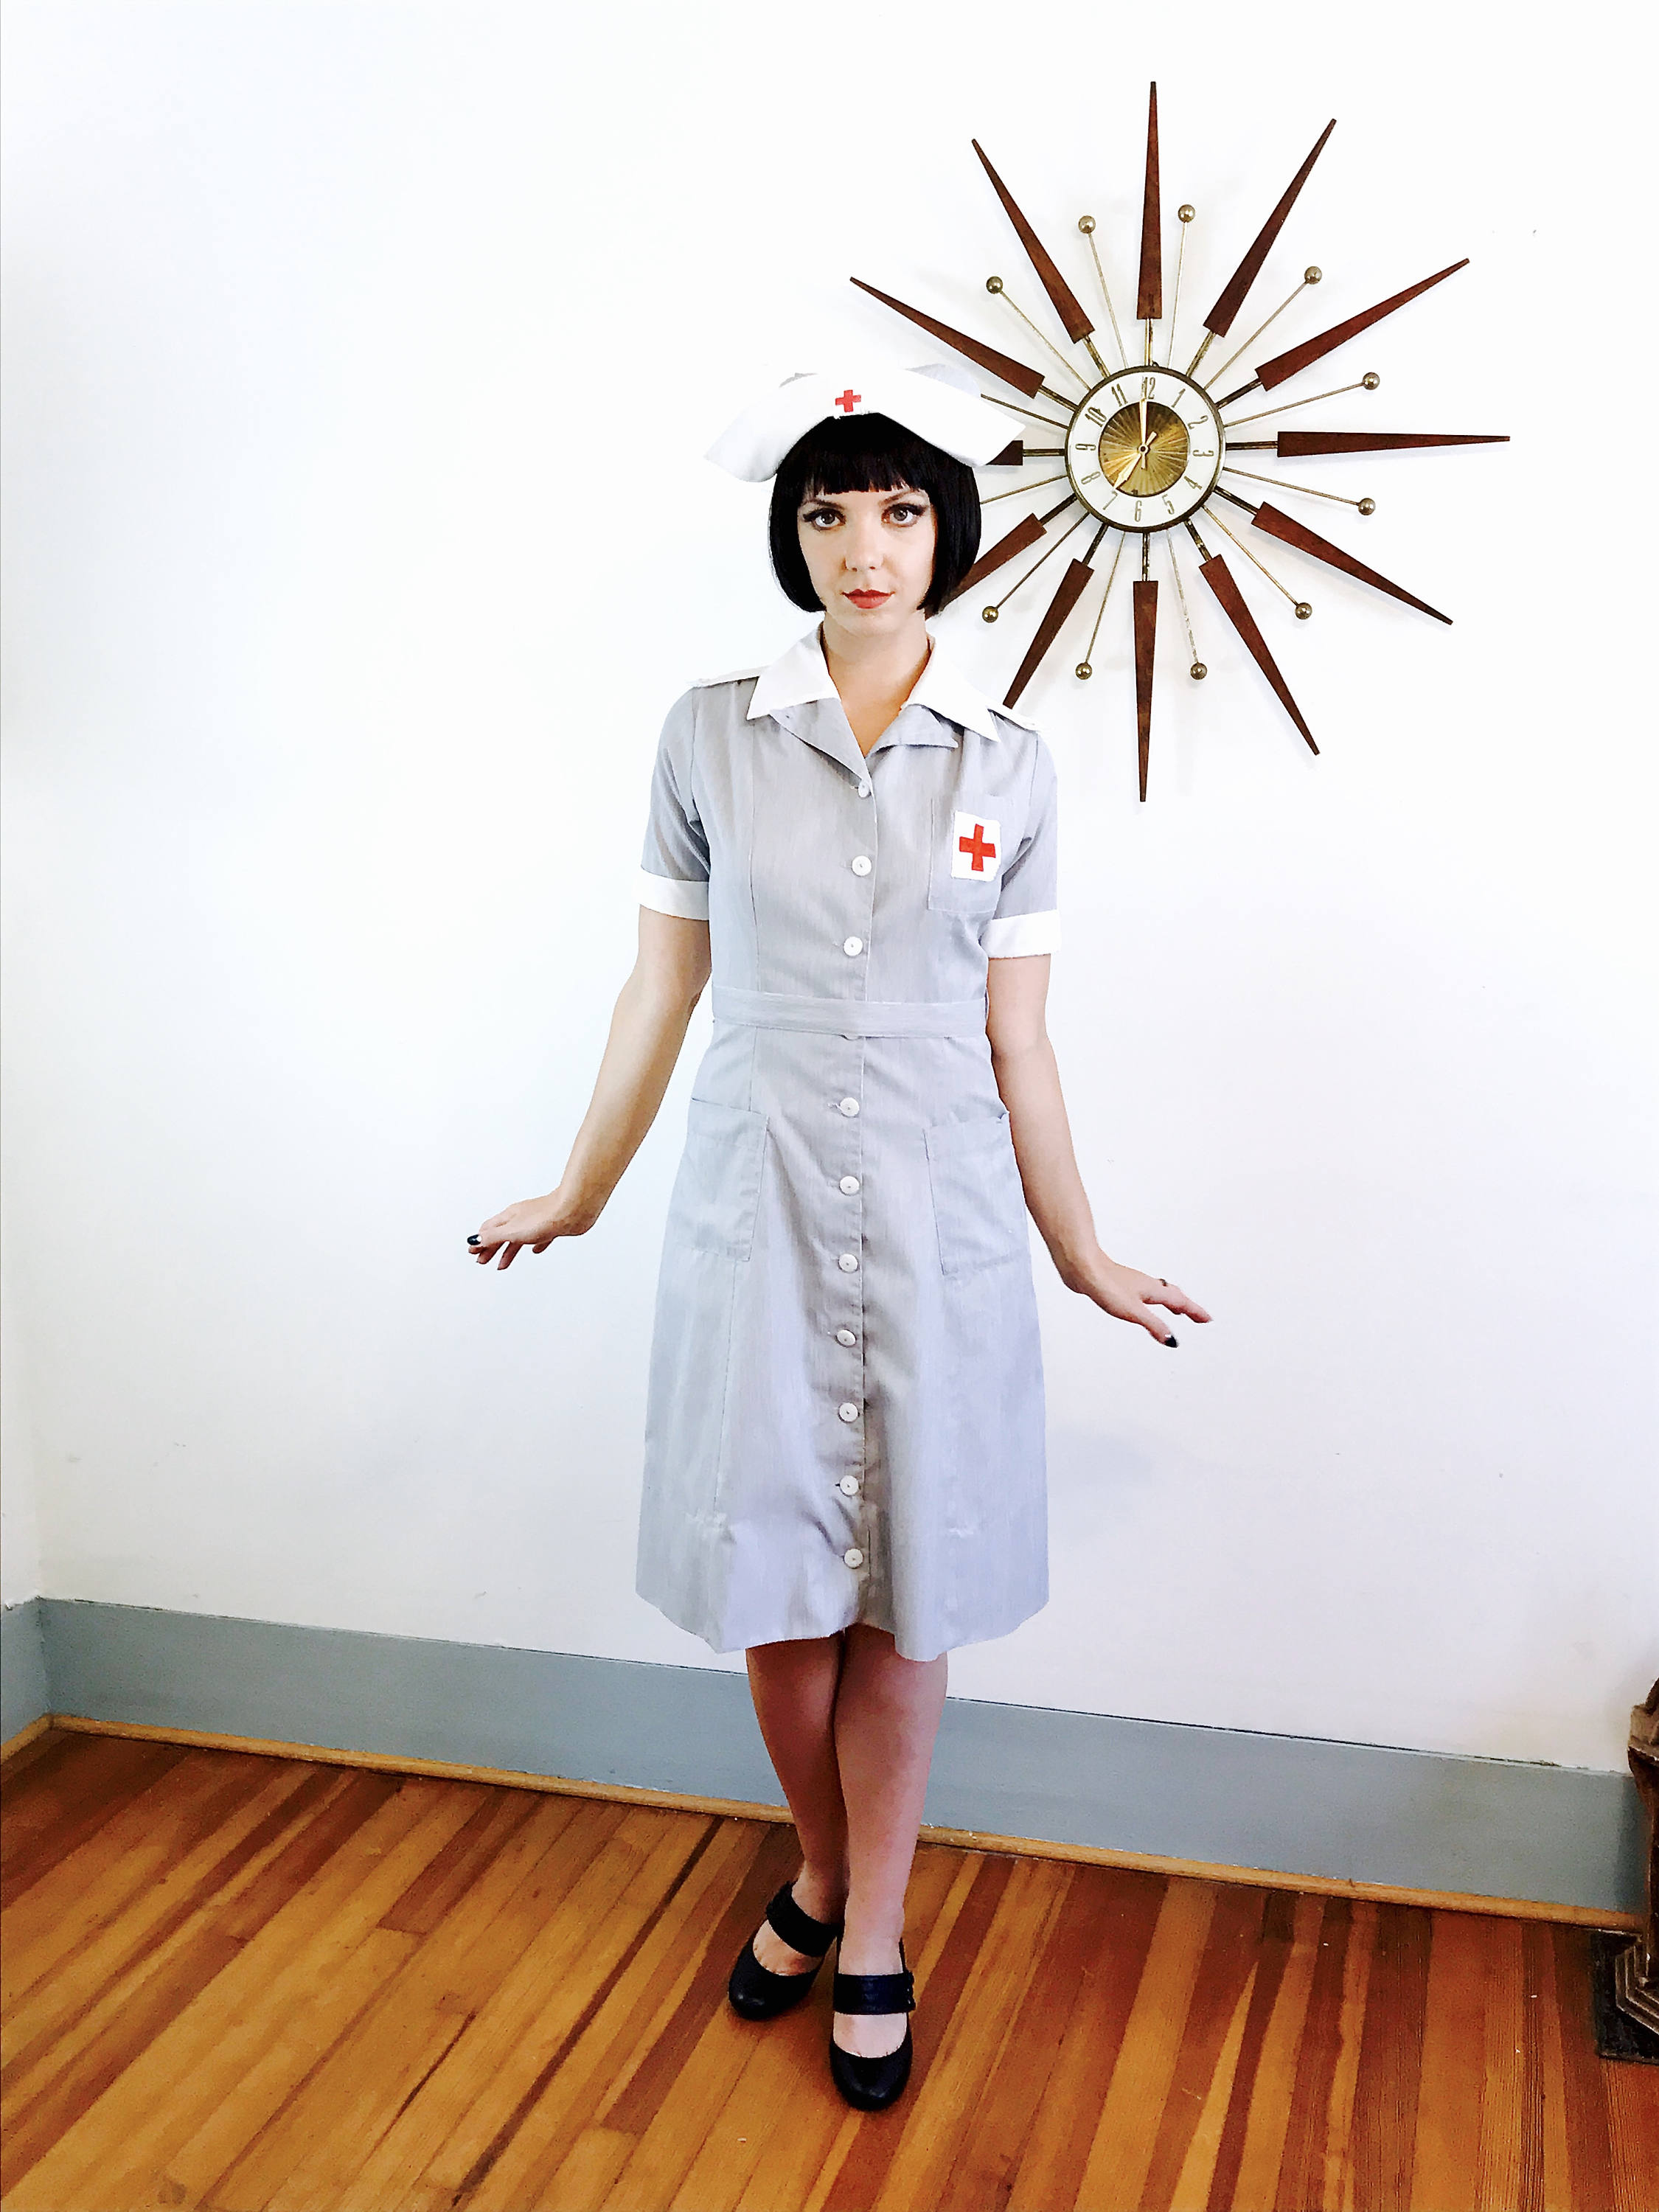 Authentic 1940s Cross Uniform, Vintage 40s Nurse Uniform, WWII Nurse, It's a Dilly Uniform, WW2 uniform, Cross Uniform, Size L